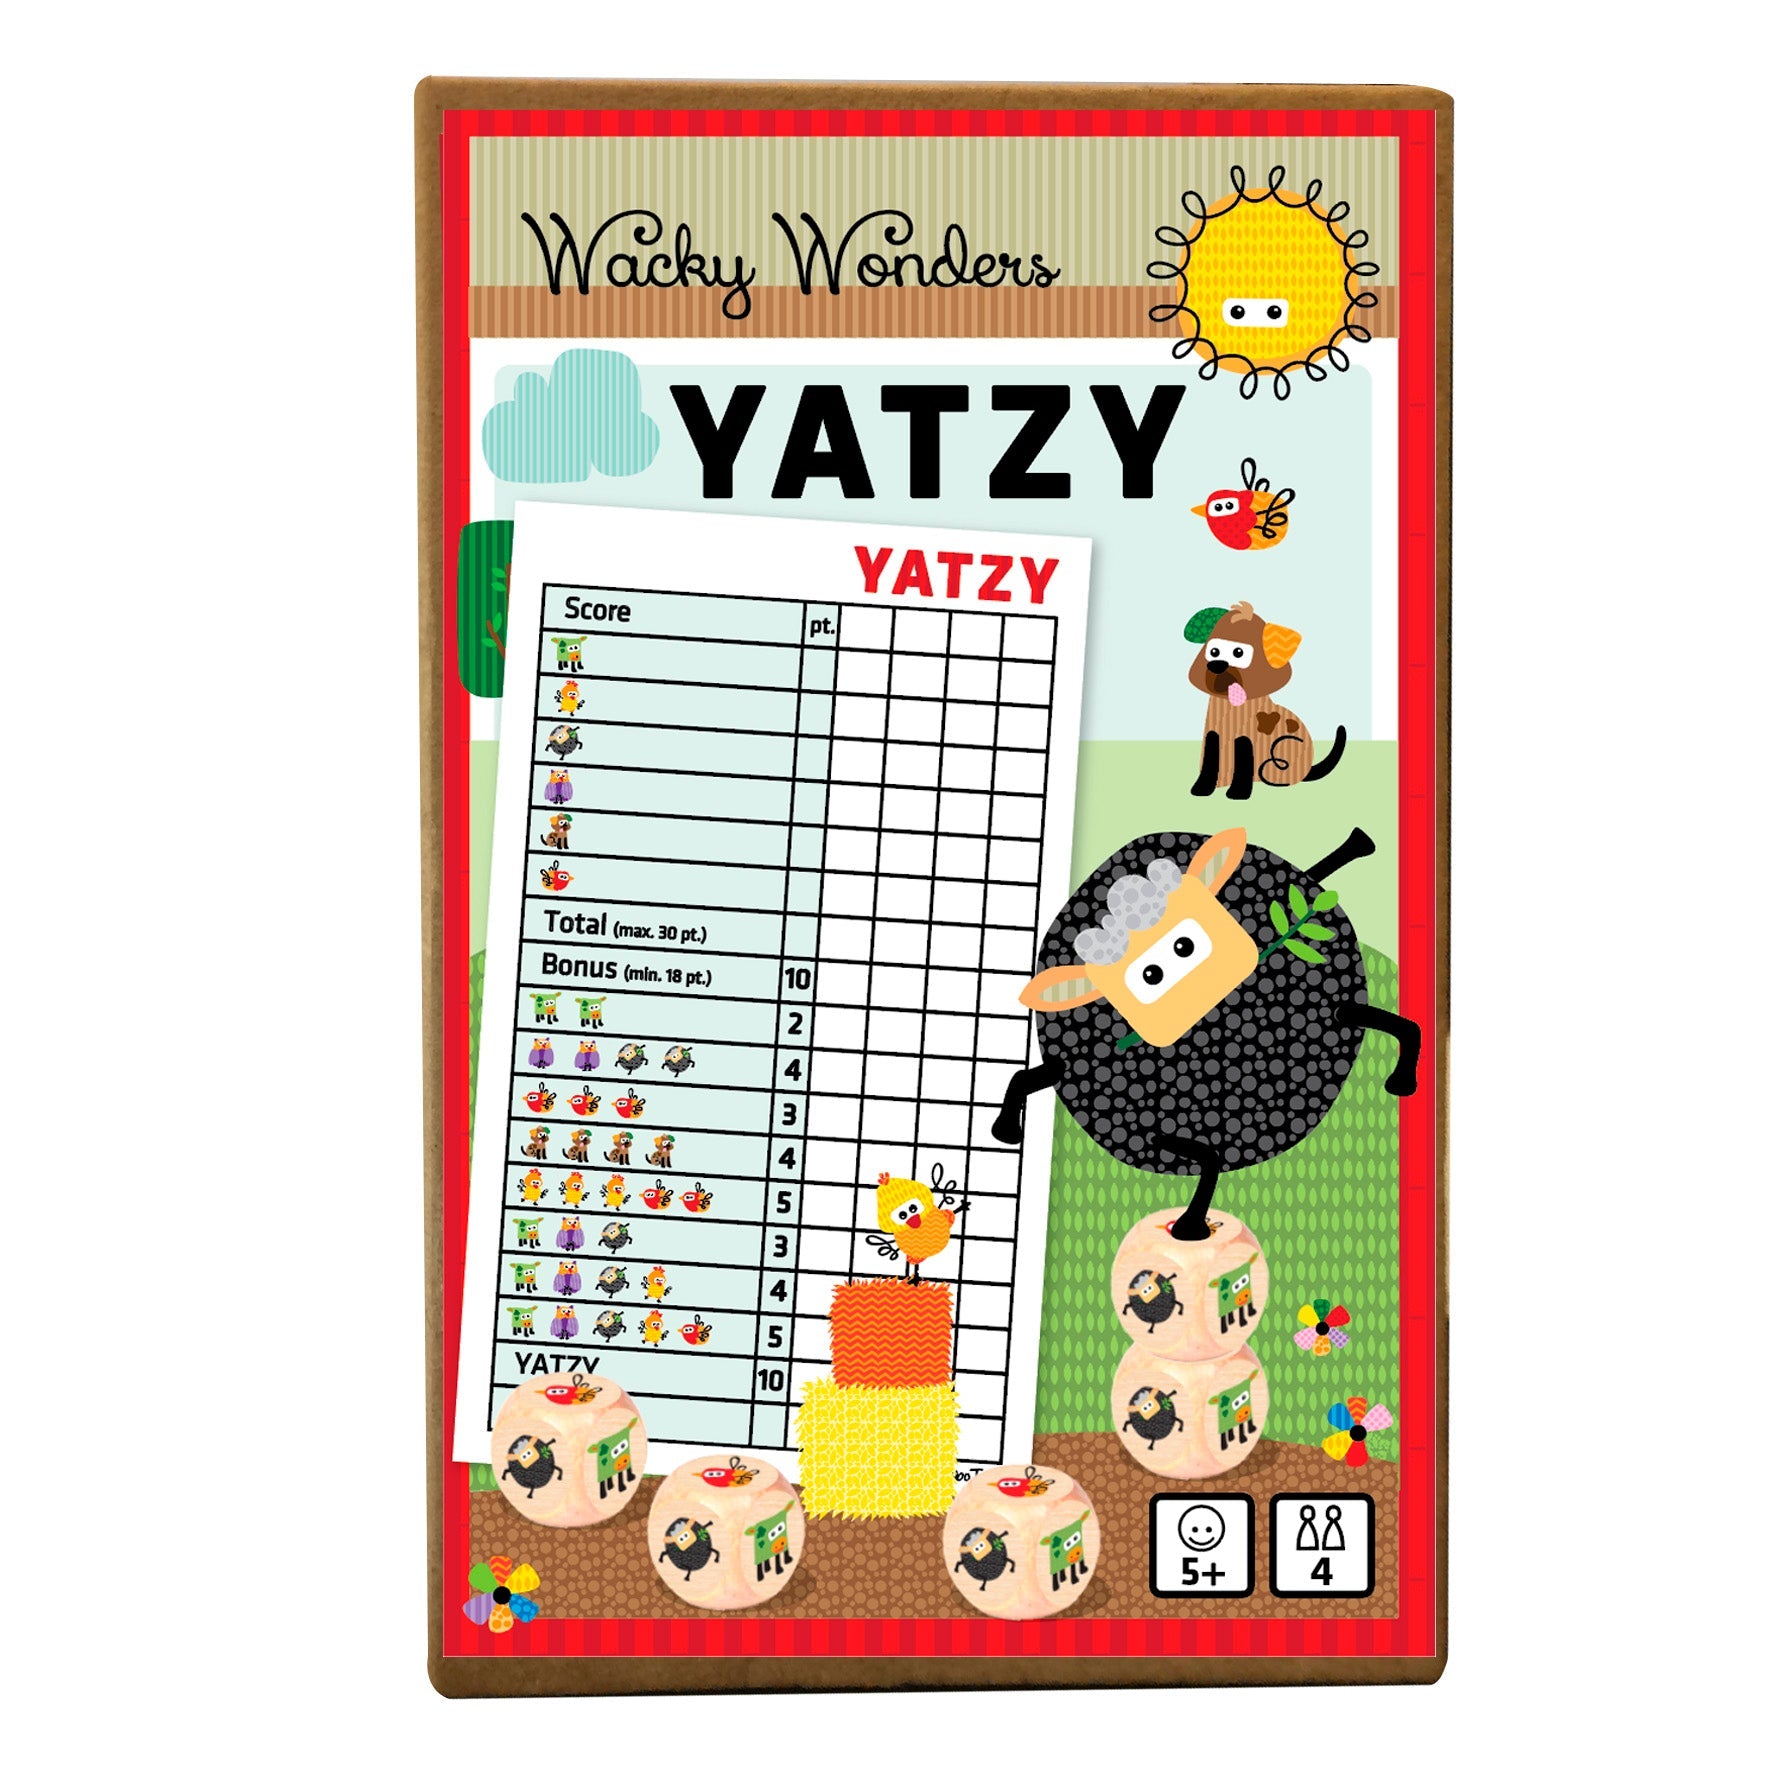 Yatzy - Wacky Wonders